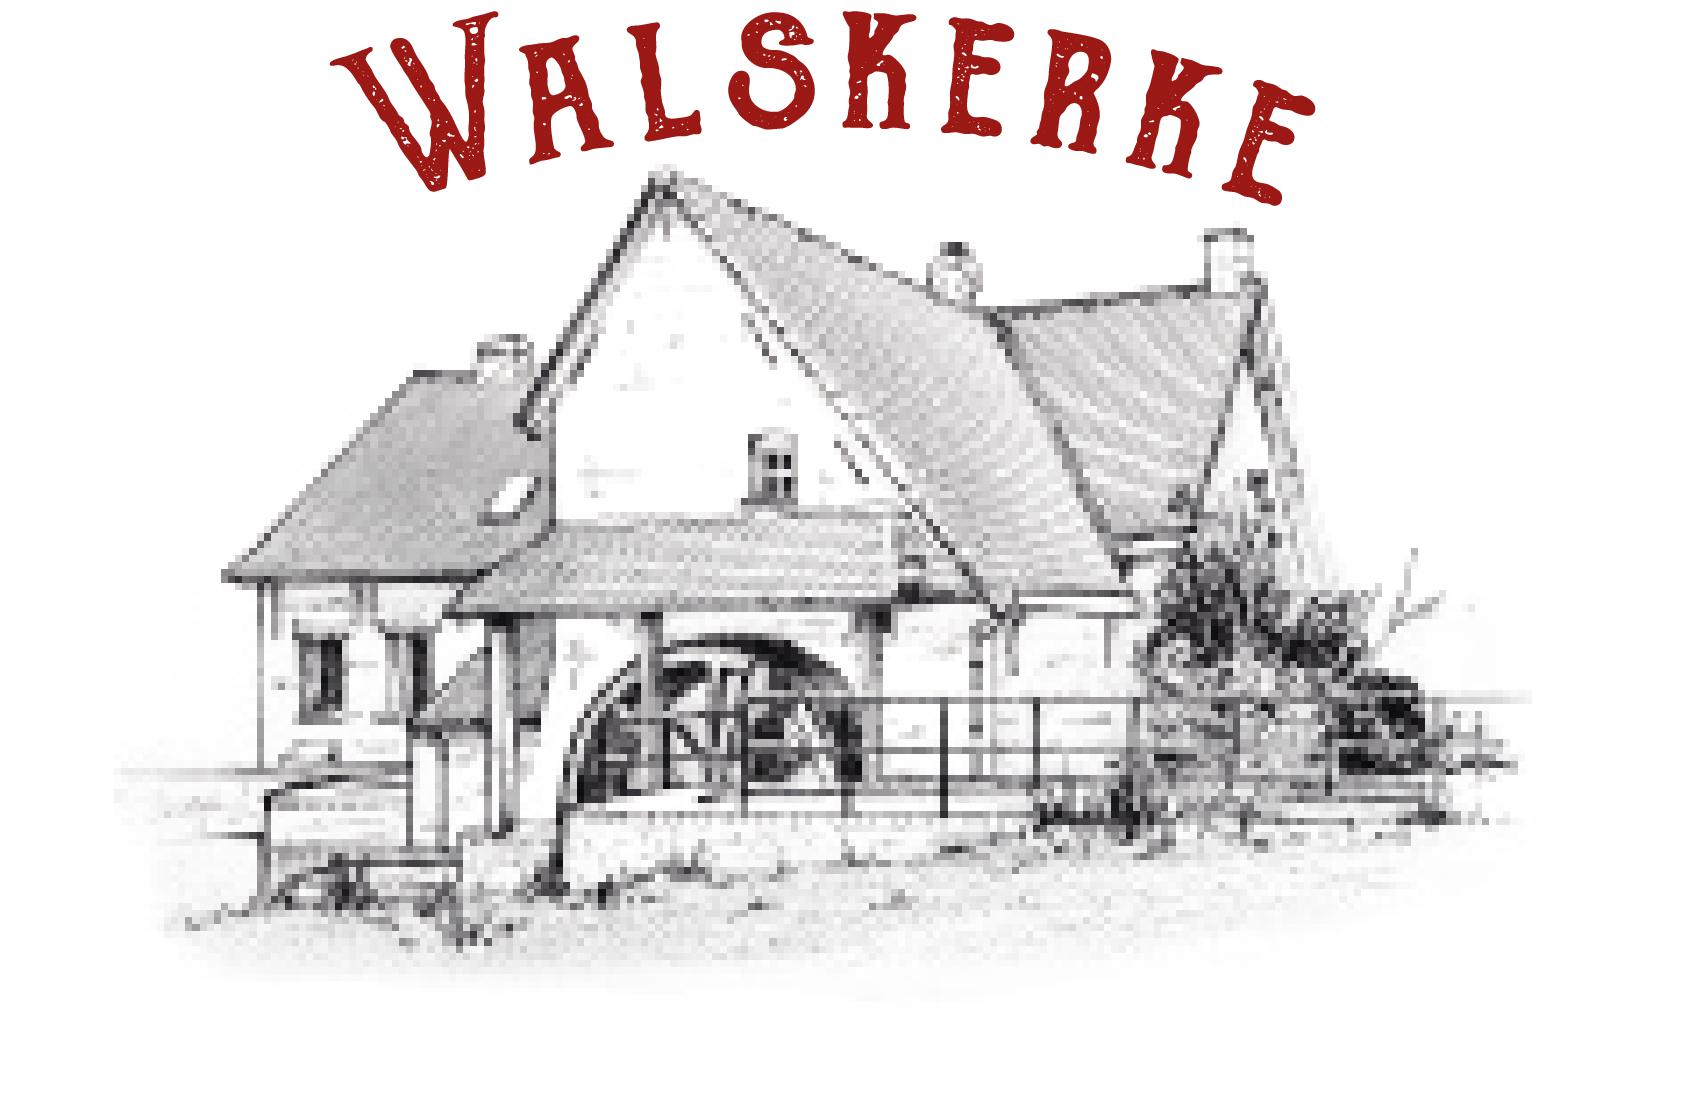 Walskerke